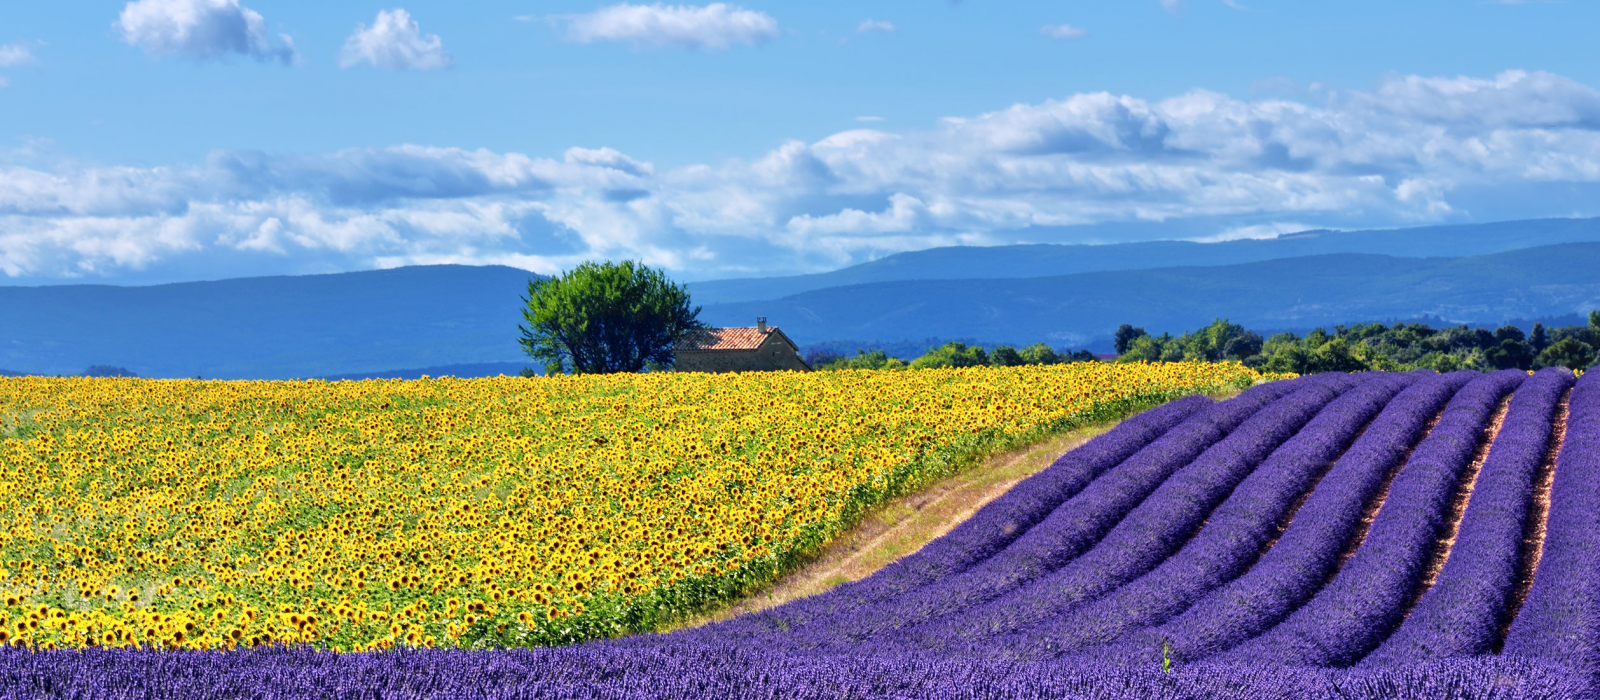 Les incontournables pour une semaine idéale en Provence